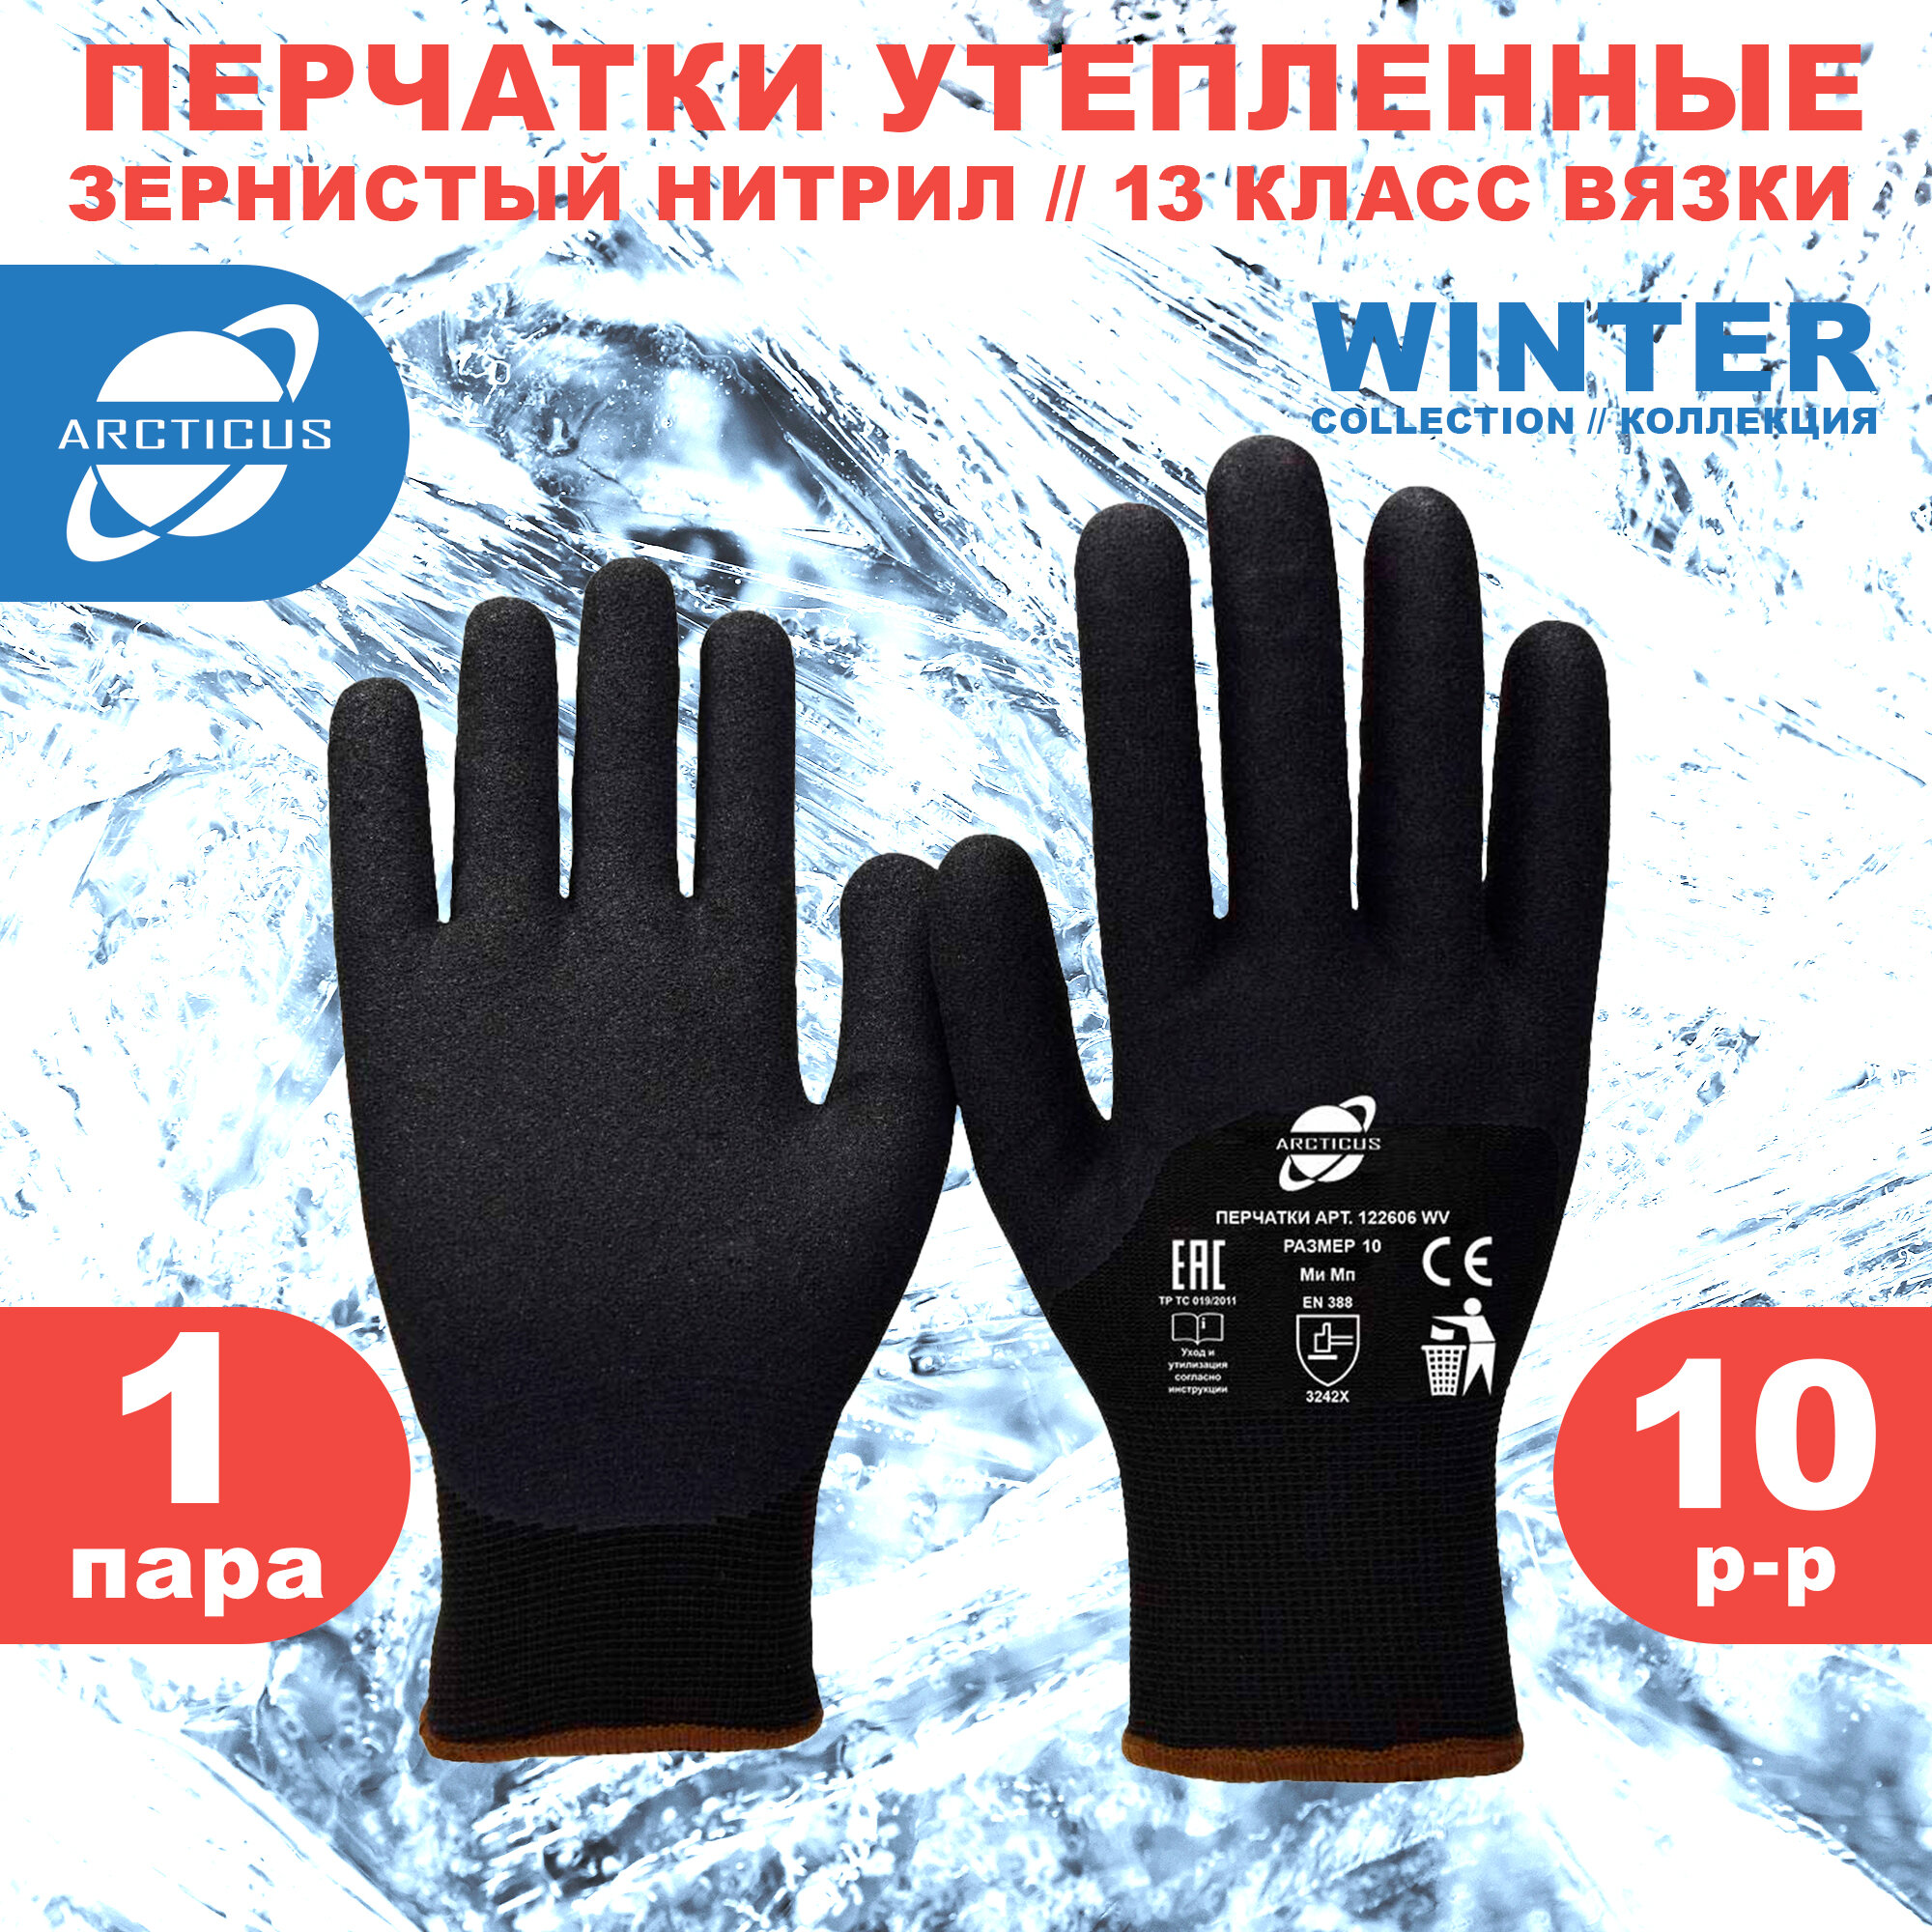 Защитные зимние перчатки с нитриловым покрытием ARCTICUS 122606 WV Германия размер 10